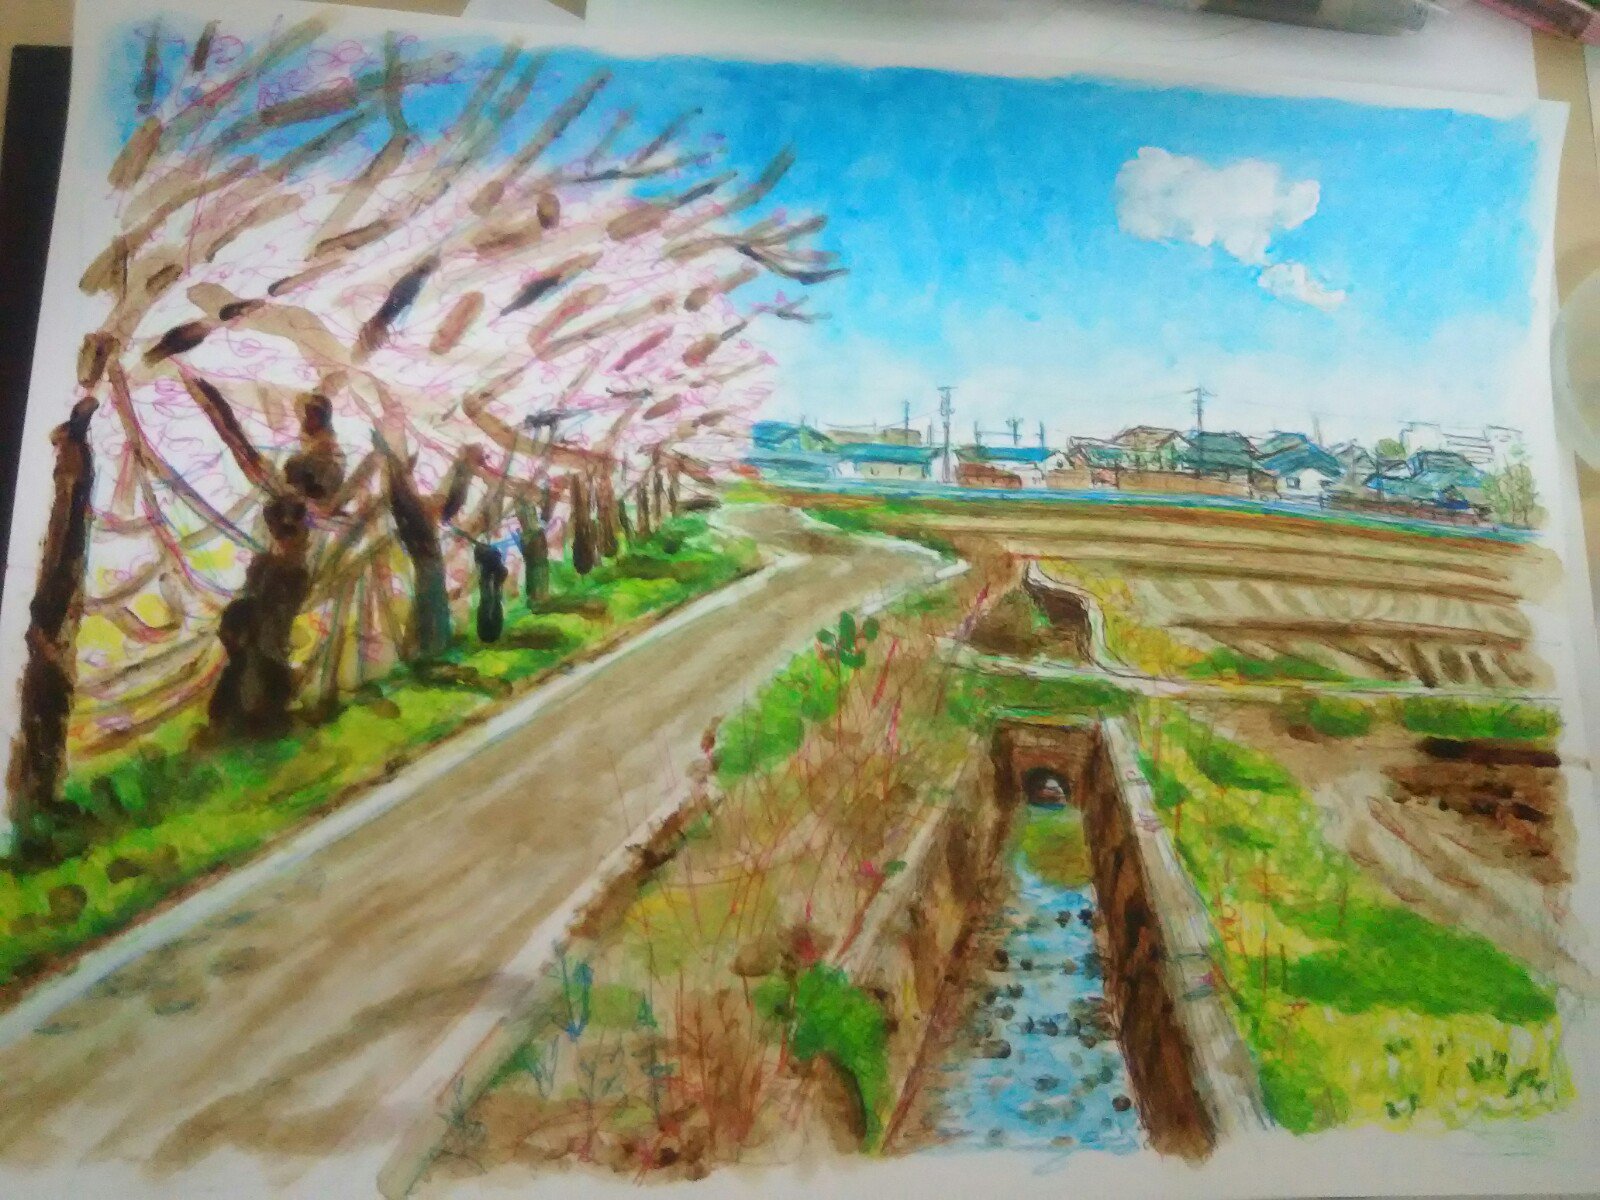 ねこい 12月6日 11日まで新潟美術学園ギャラリー展示会に参加しています 本日のイラスト紹介 季節はずれですが ご注文品の 桜並木です モンゴル支援の方が日本の風景として日本語学校へ持って行くそうで楽しみです イラスト アナログイラスト